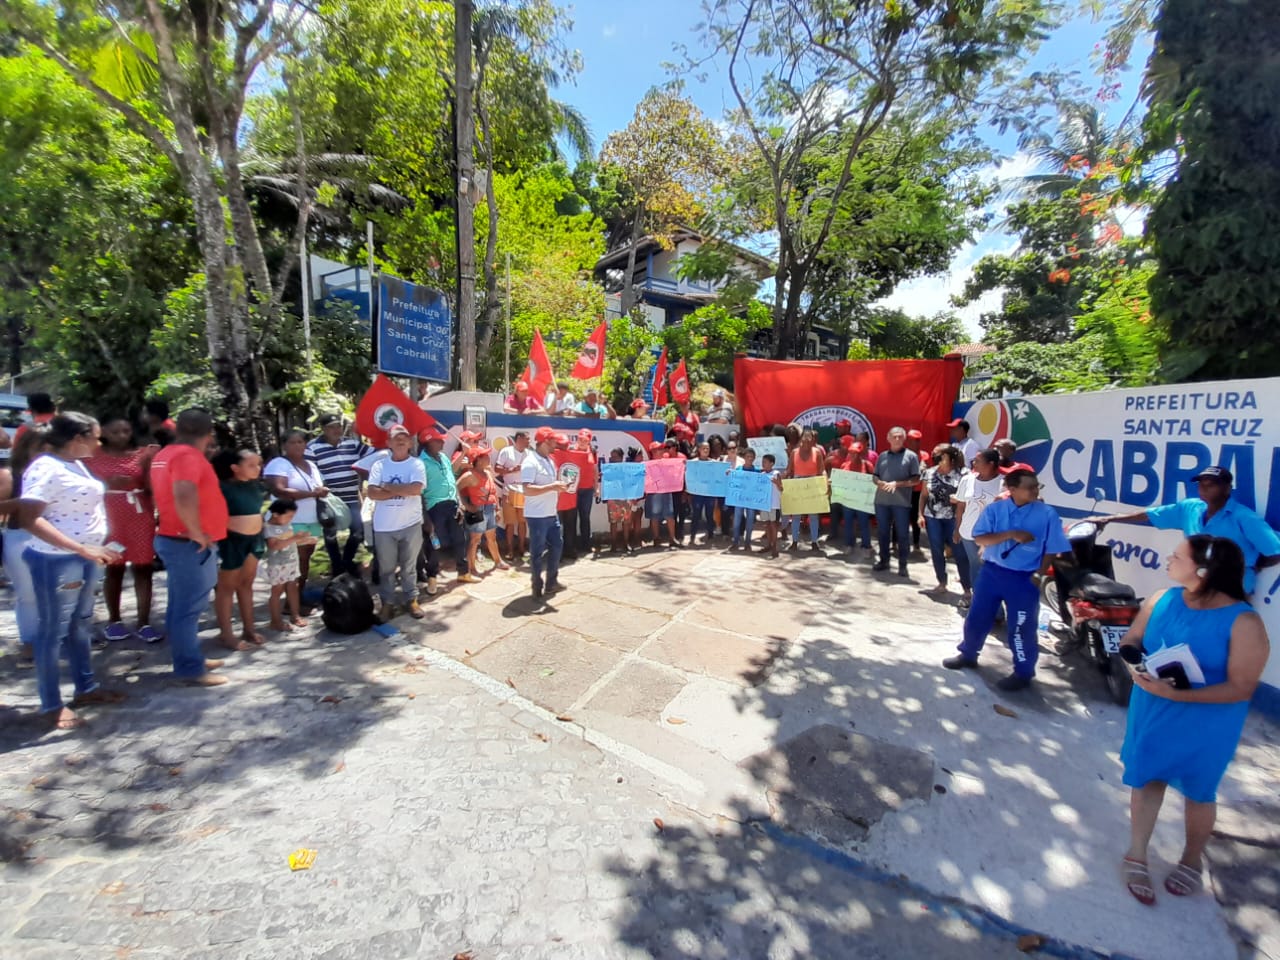 Famílias do MST ocupam prefeitura de Santa Cruz de Cabrália/BA  